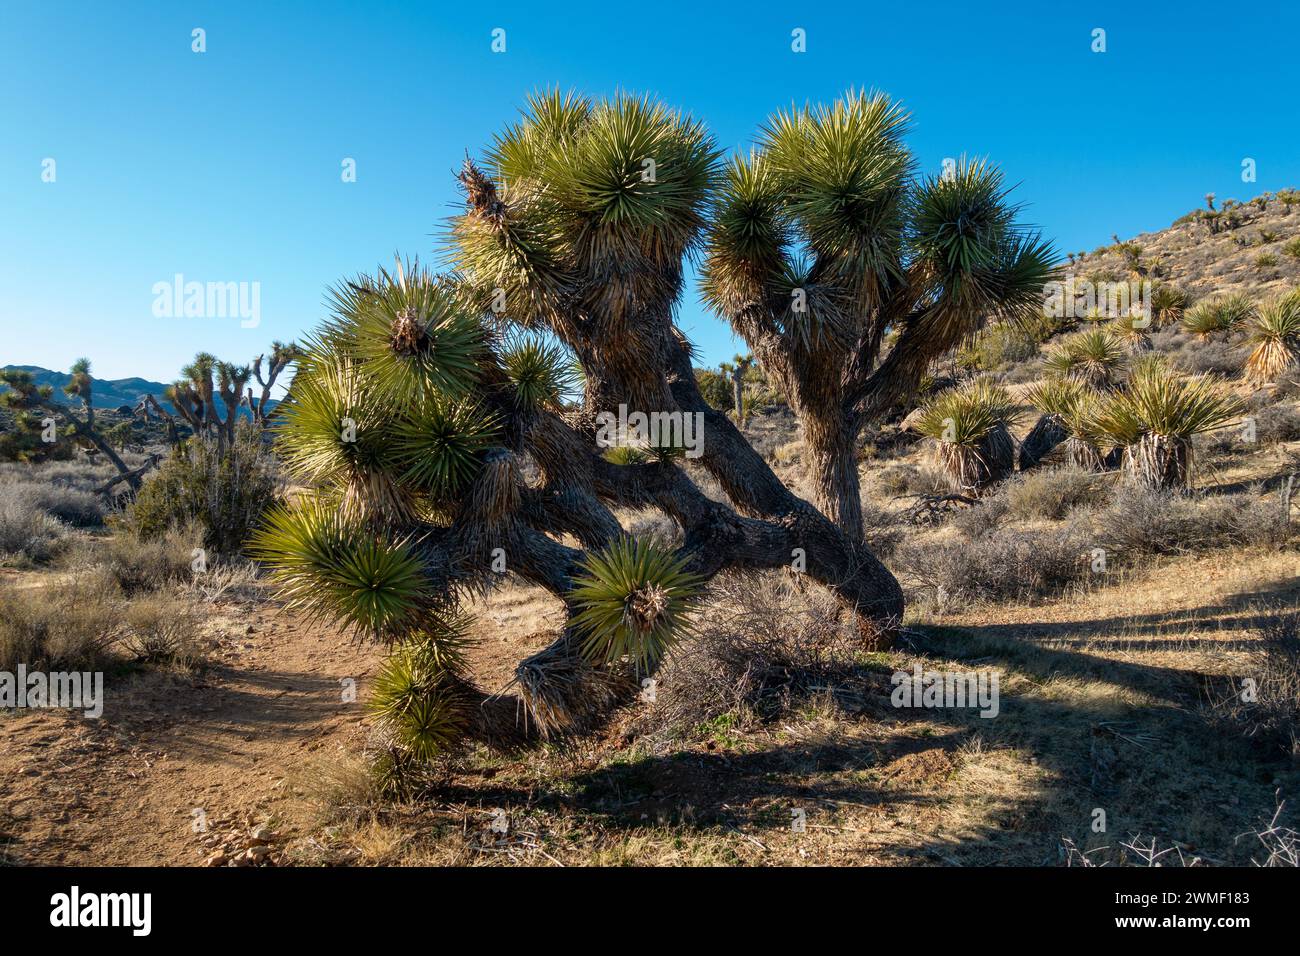 Yucca Brevifolia Cactus Palm Tree Mojave Desert Lost Horse Mine Hiking Trail. Parco nazionale di Joshua Tree paesaggio del giorno solare California sud-ovest degli Stati Uniti Foto Stock